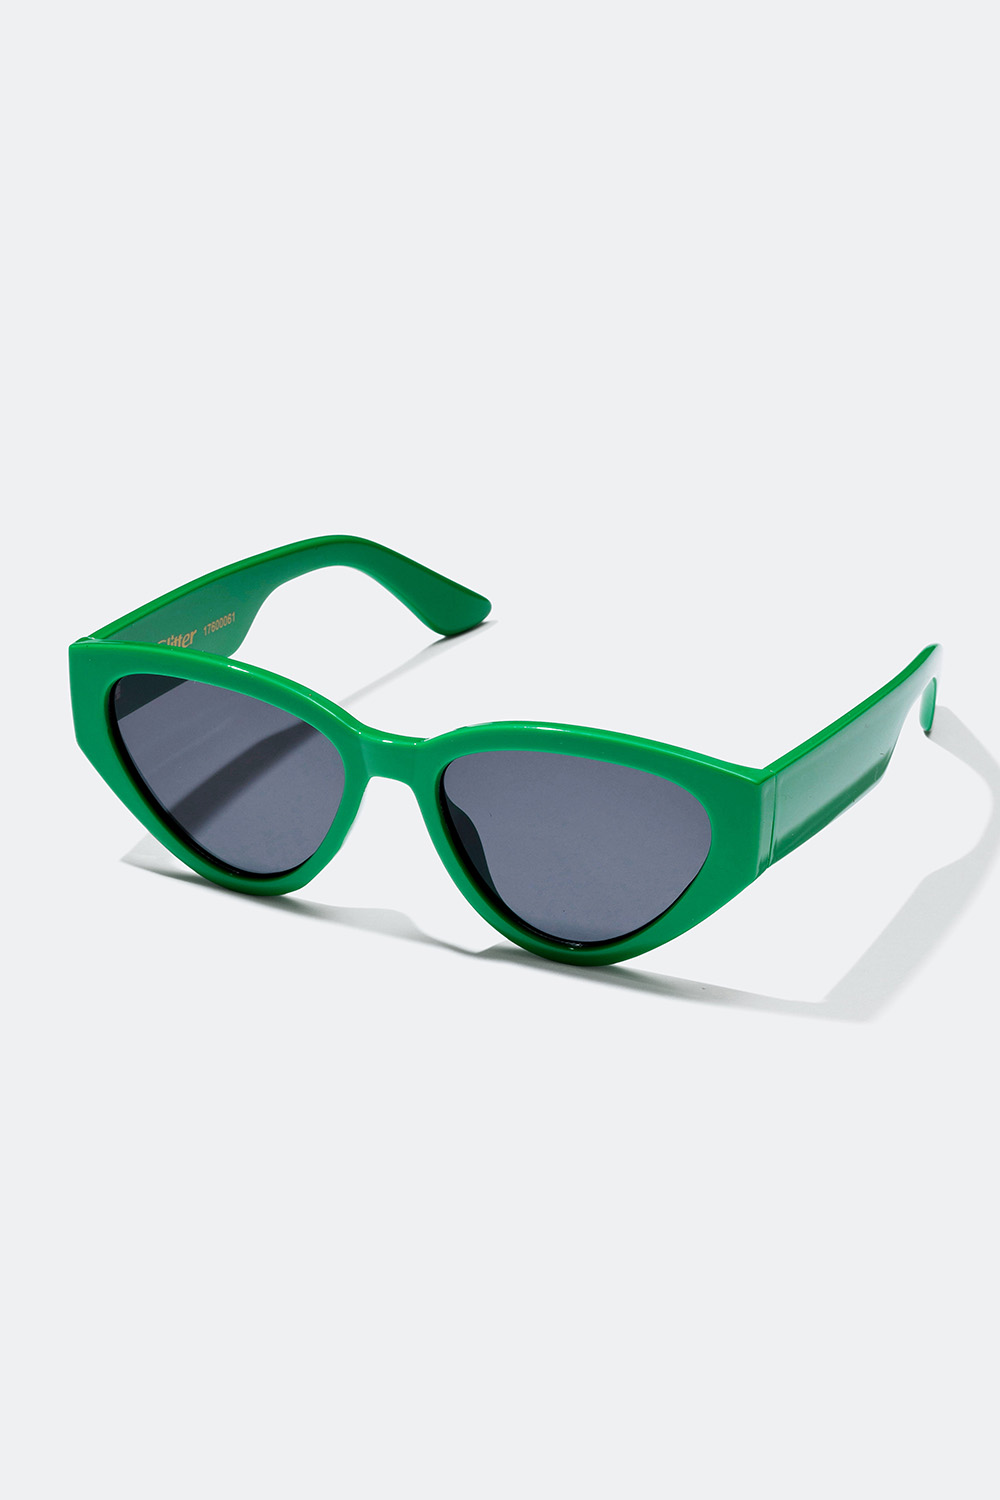 Grønne solbriller med afrundet cat eye-design i gruppen Accessories / Solbriller hos Glitter (176000617500)